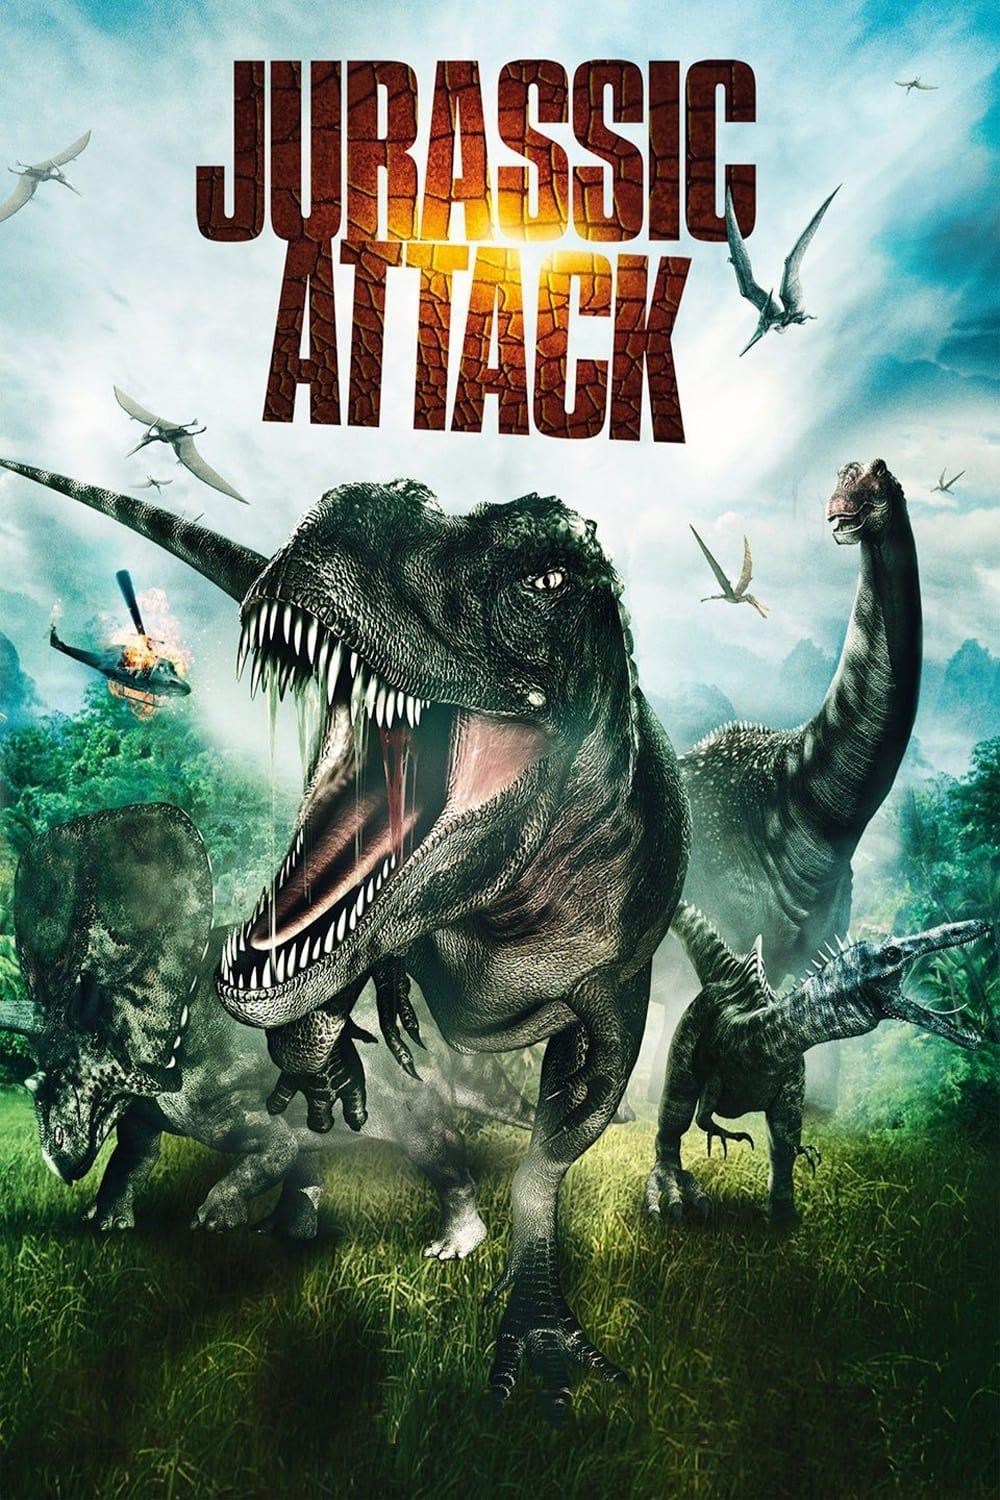 Jurassic Attack poster